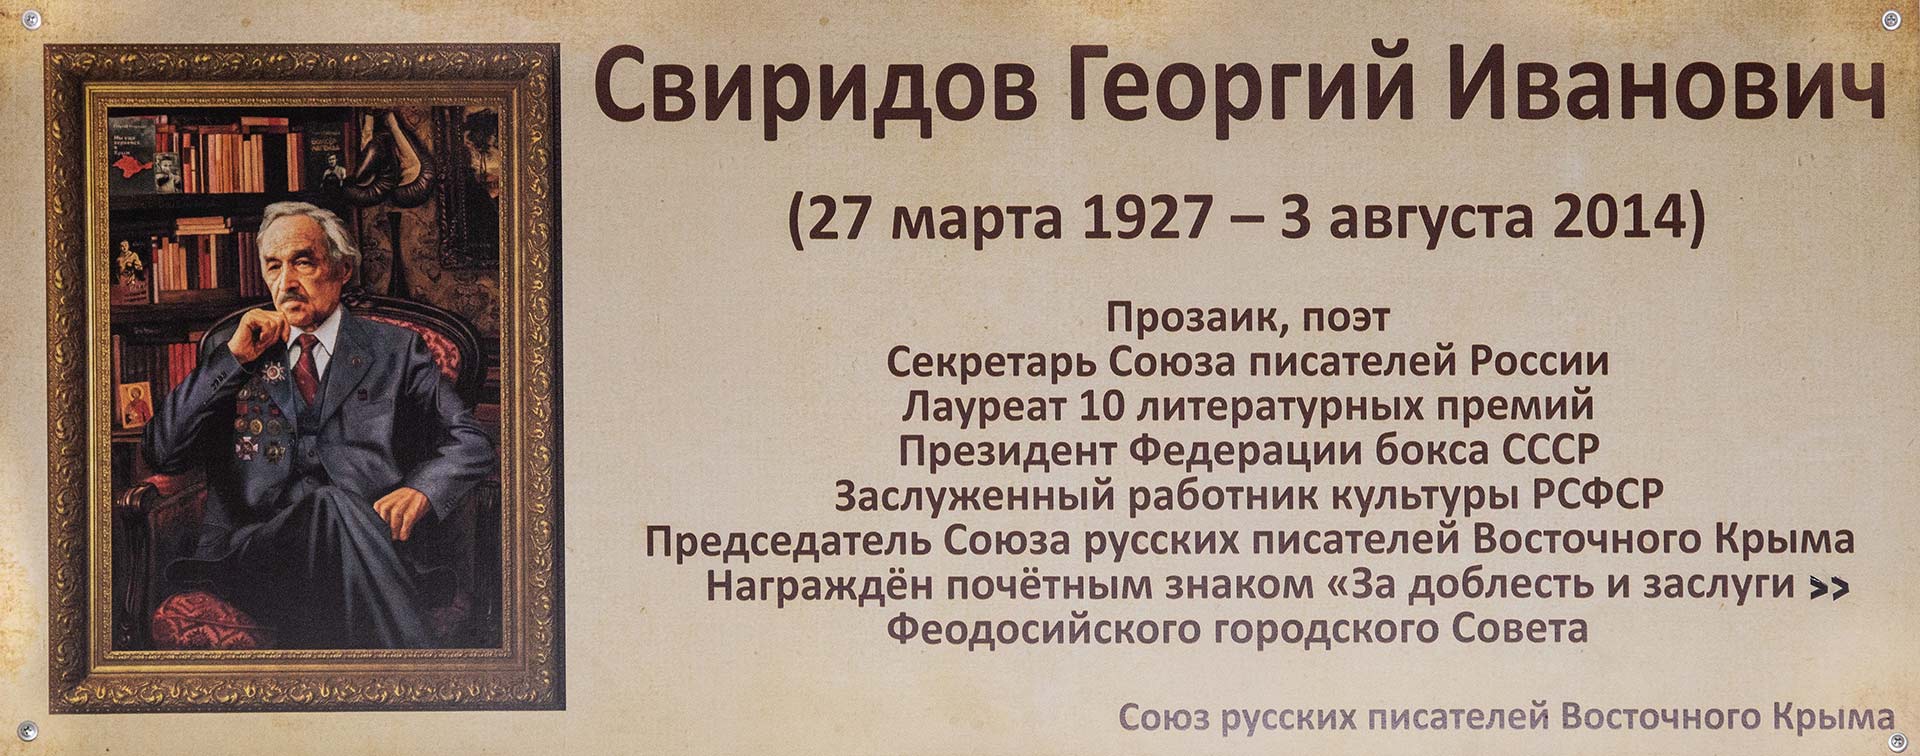 Фото памятной доски Георгия Свиридова в библиотеке с. Береговое